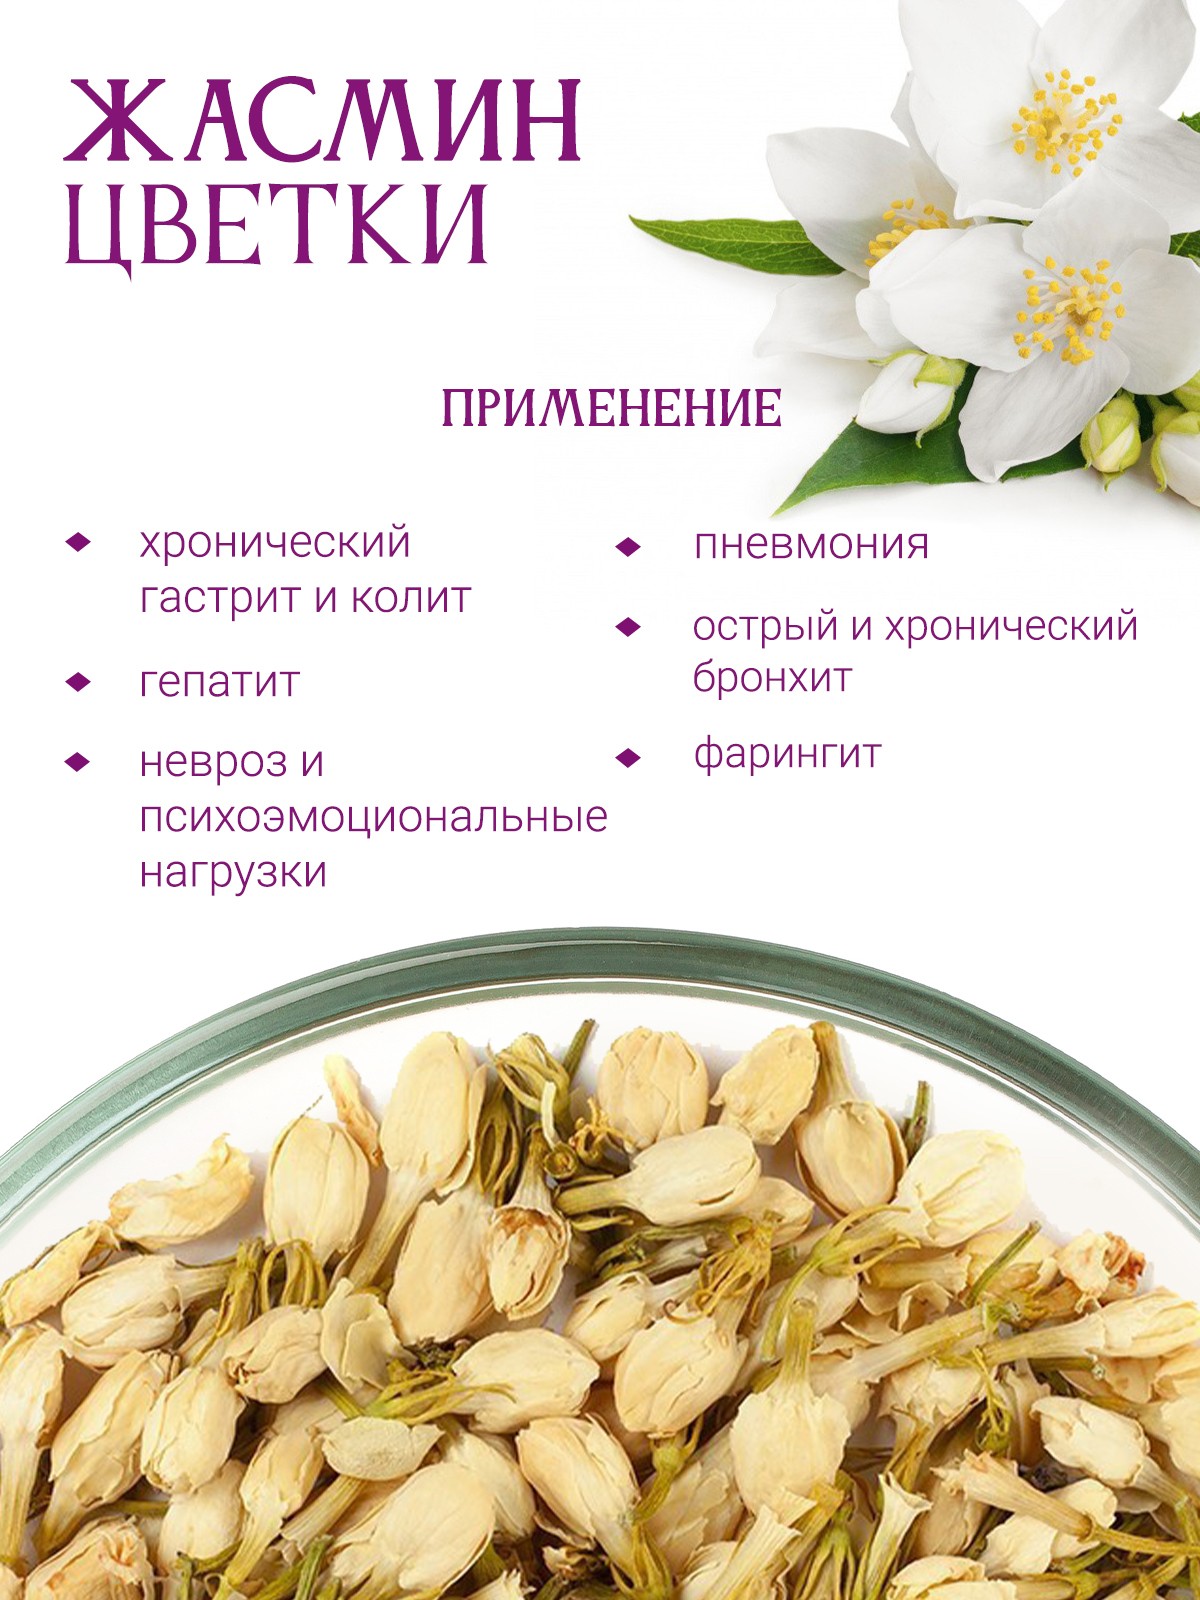 Цветки жасмина - купить лечебные травы недорого в интернет-магазине «Травы  Горного Крыма»